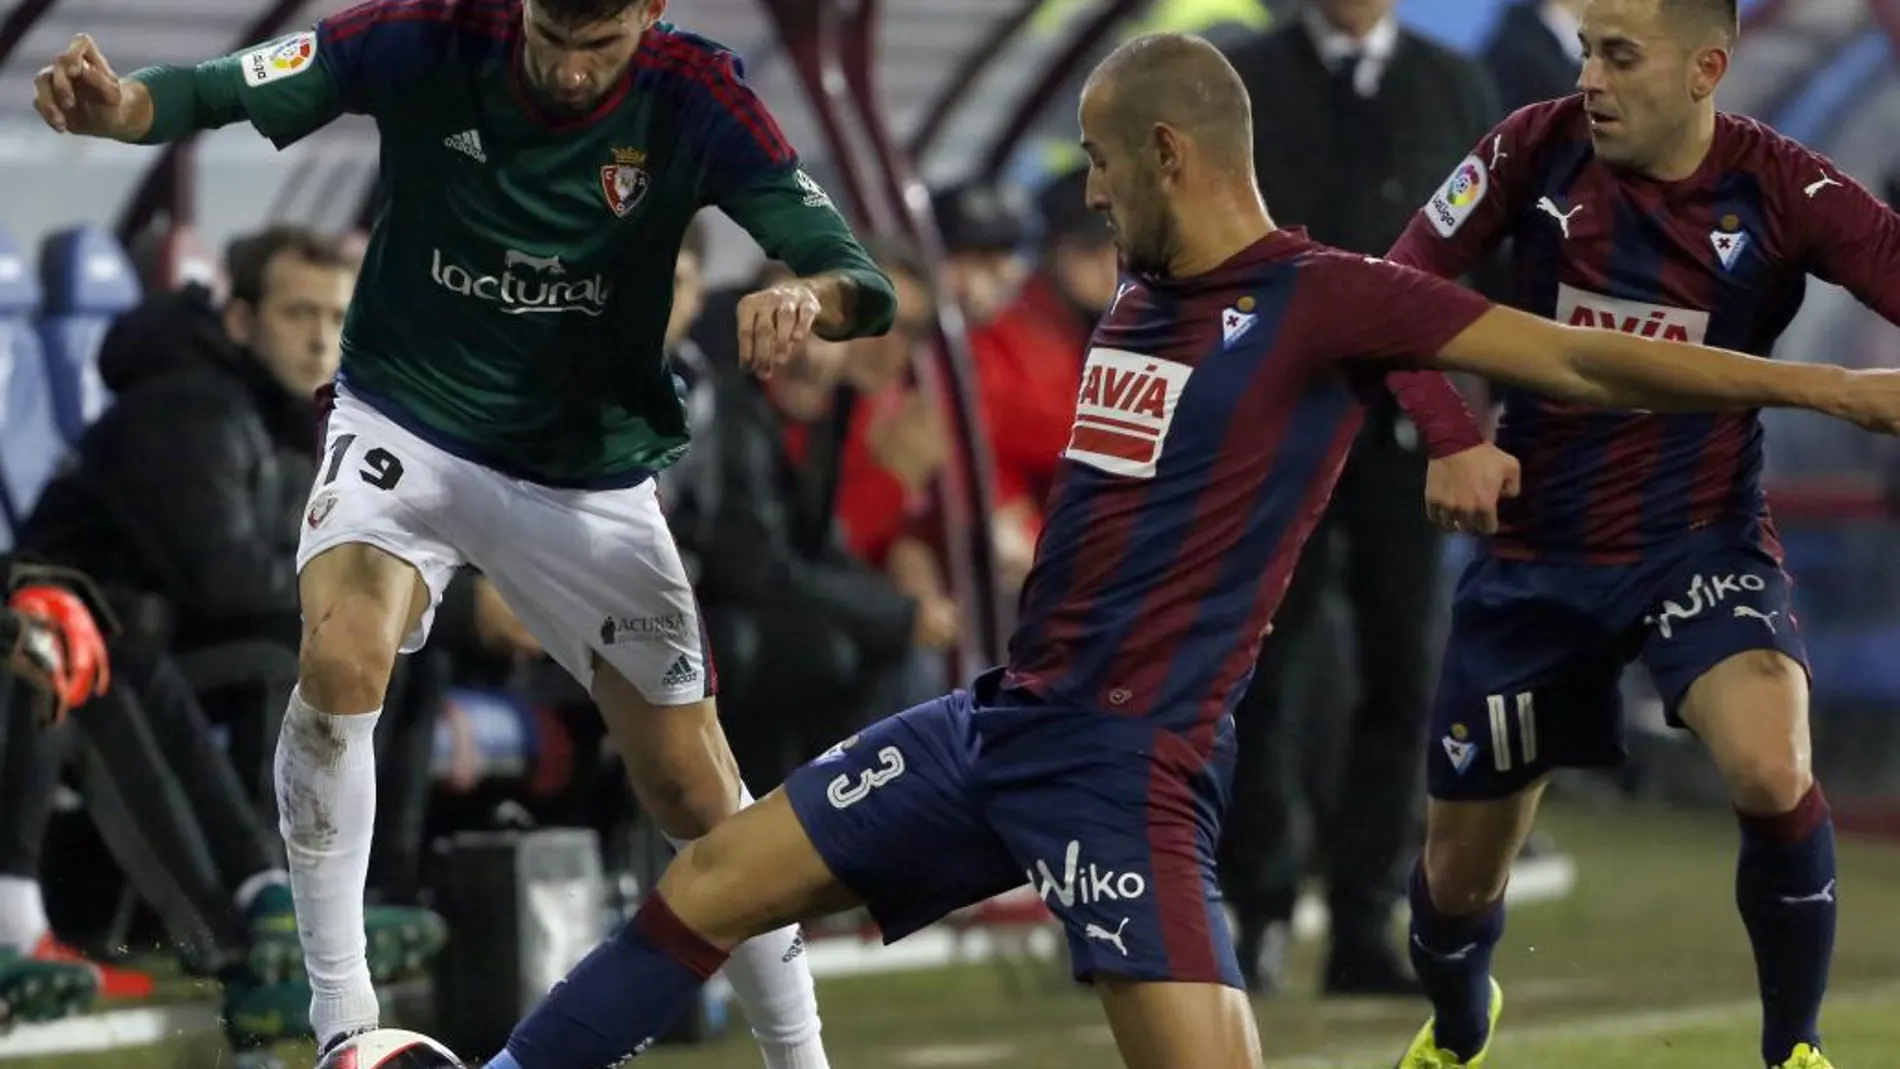 El defensa del Eibar, Juncá, lucha un balón con Kenan, delantero del Osasuna